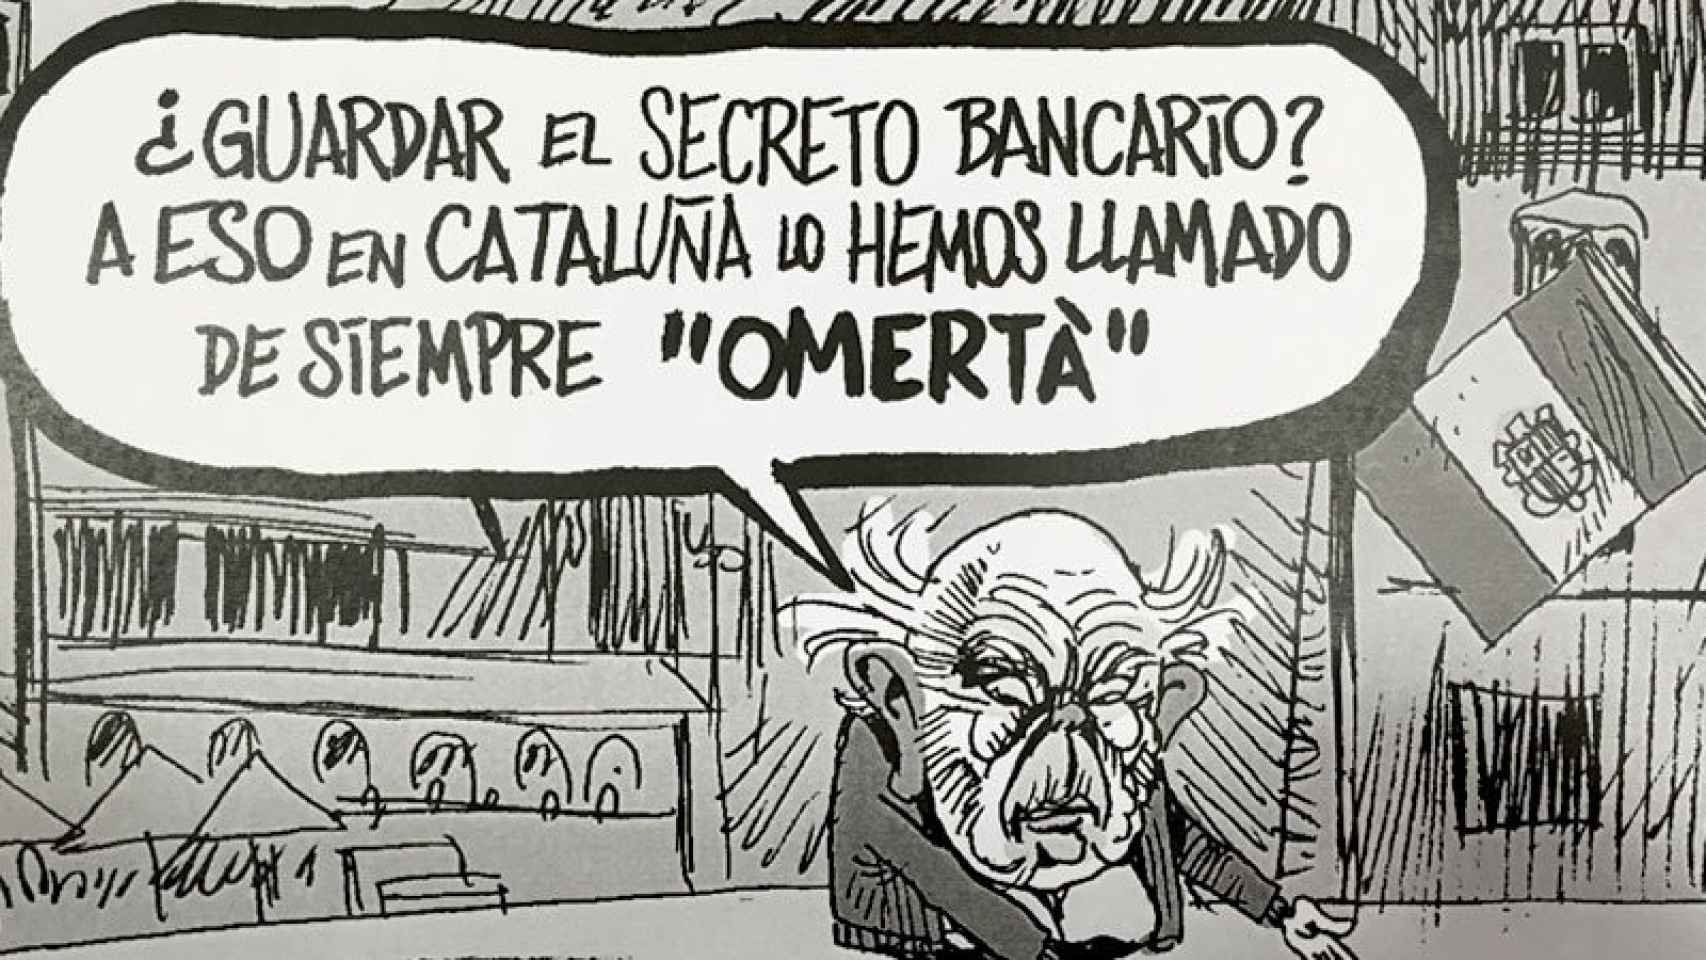 La 'Omertá' catalana